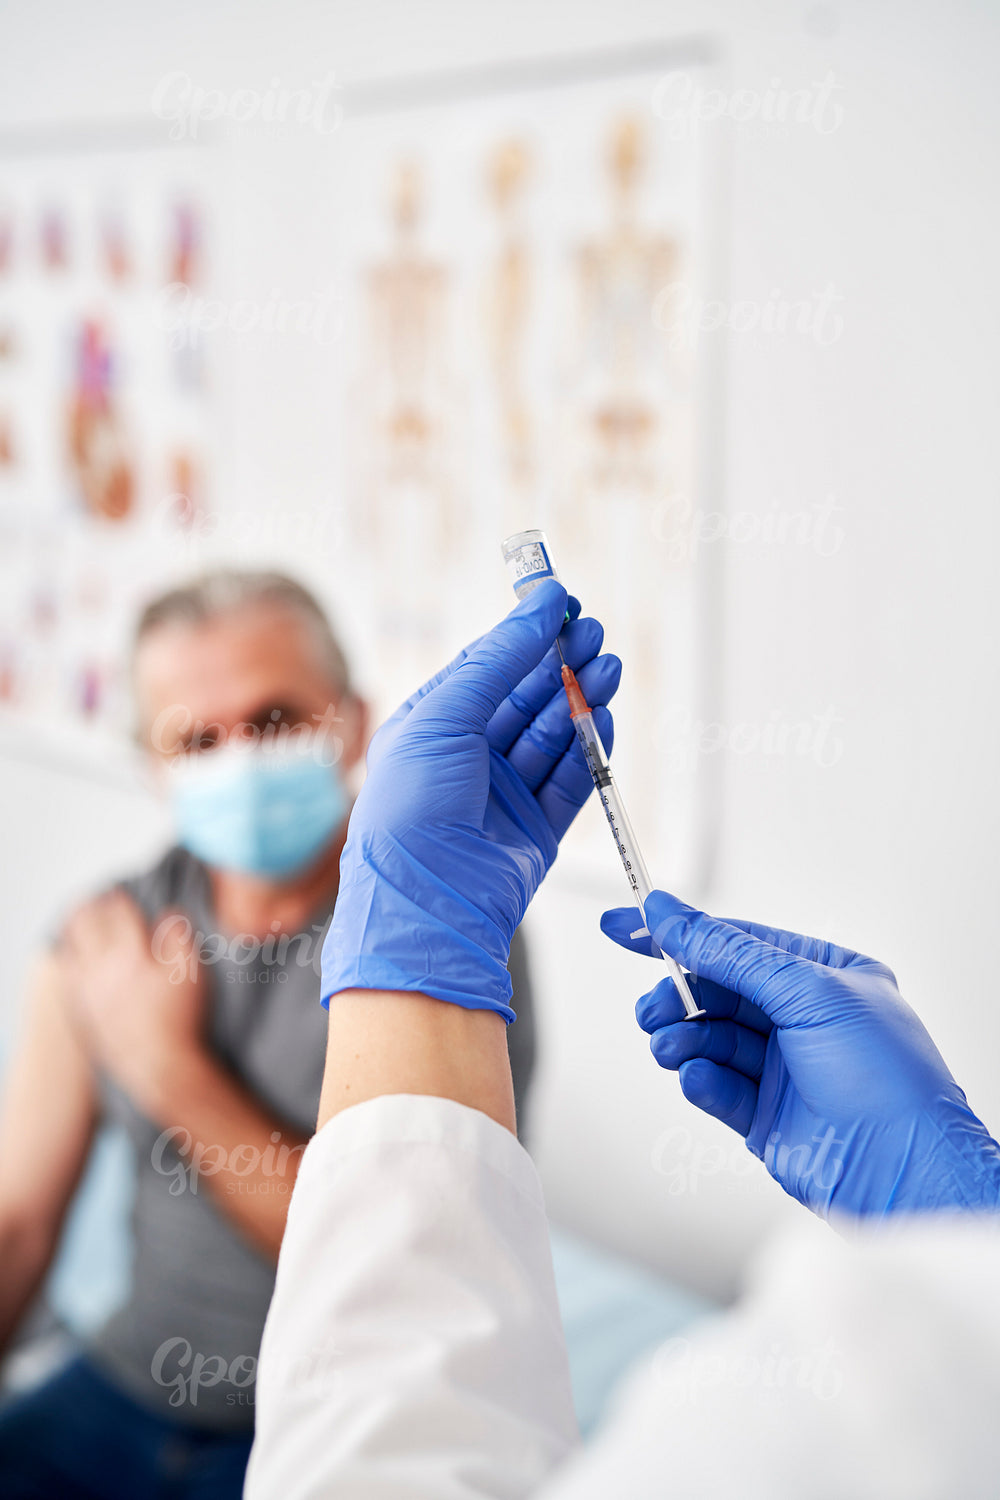 Vertical image of doctor preparing syringe for senior patient